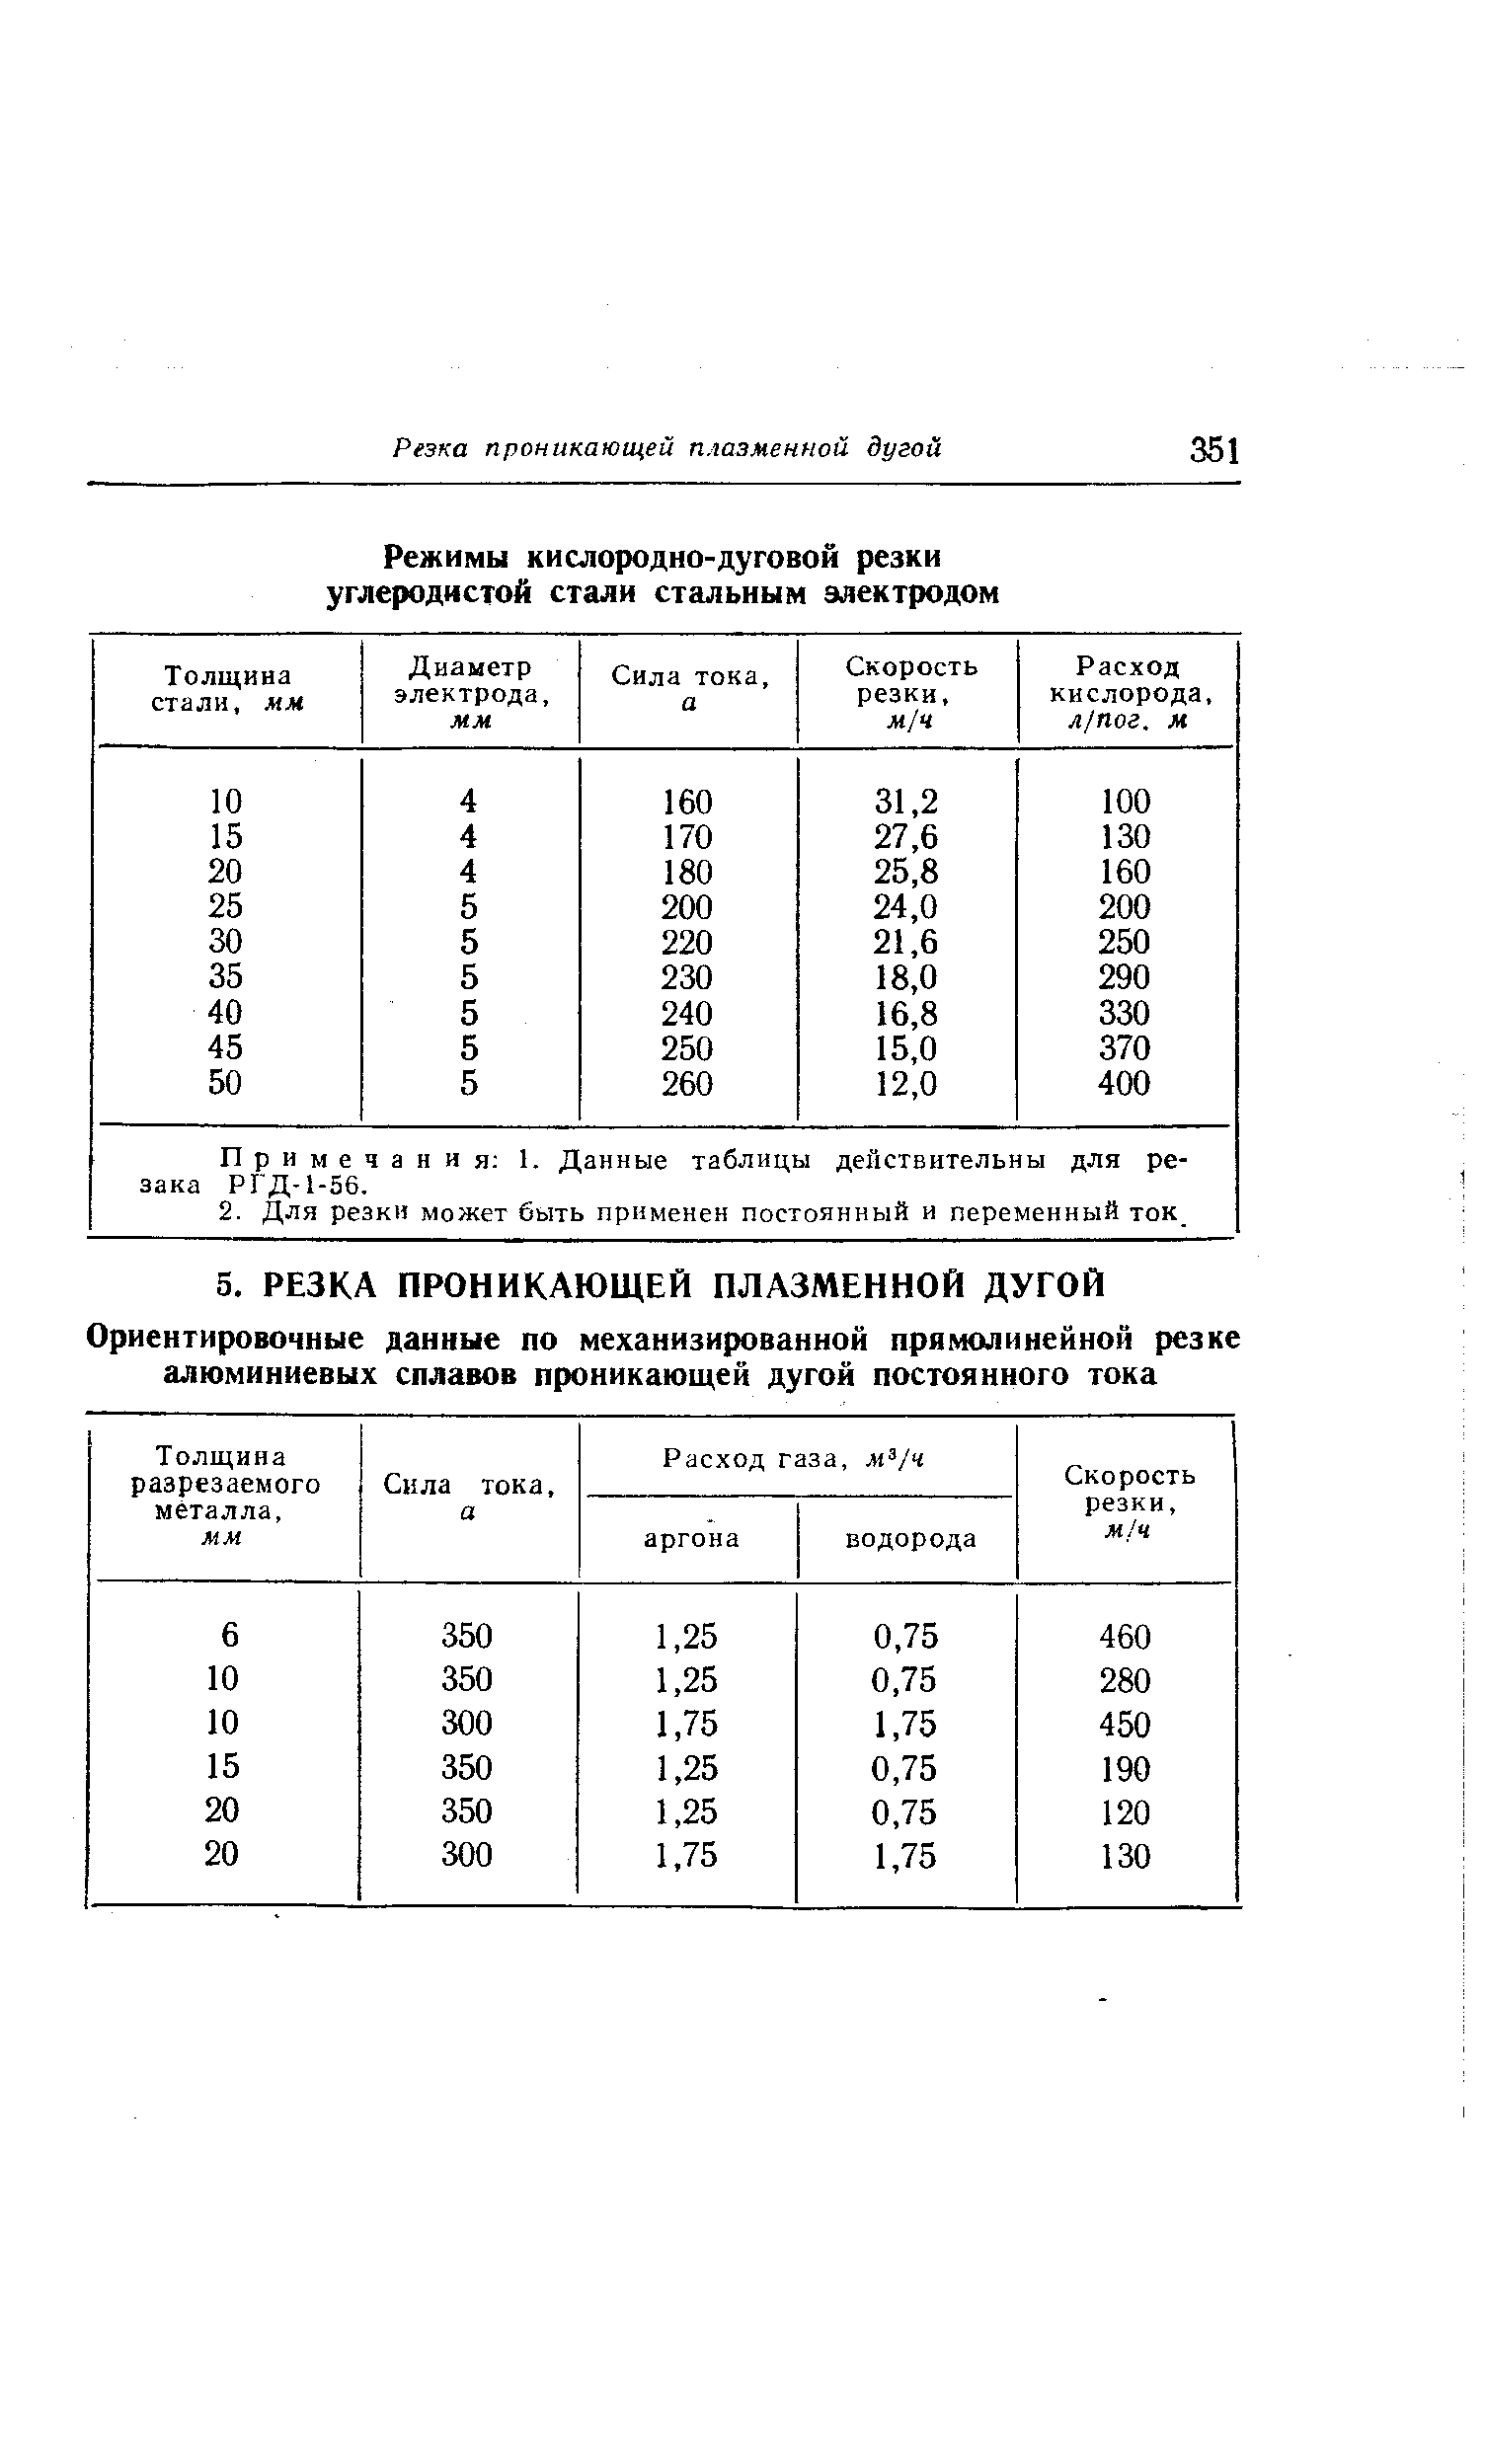 Примечания 1. Данные таблицы действительны для резака РГД-1-56.
